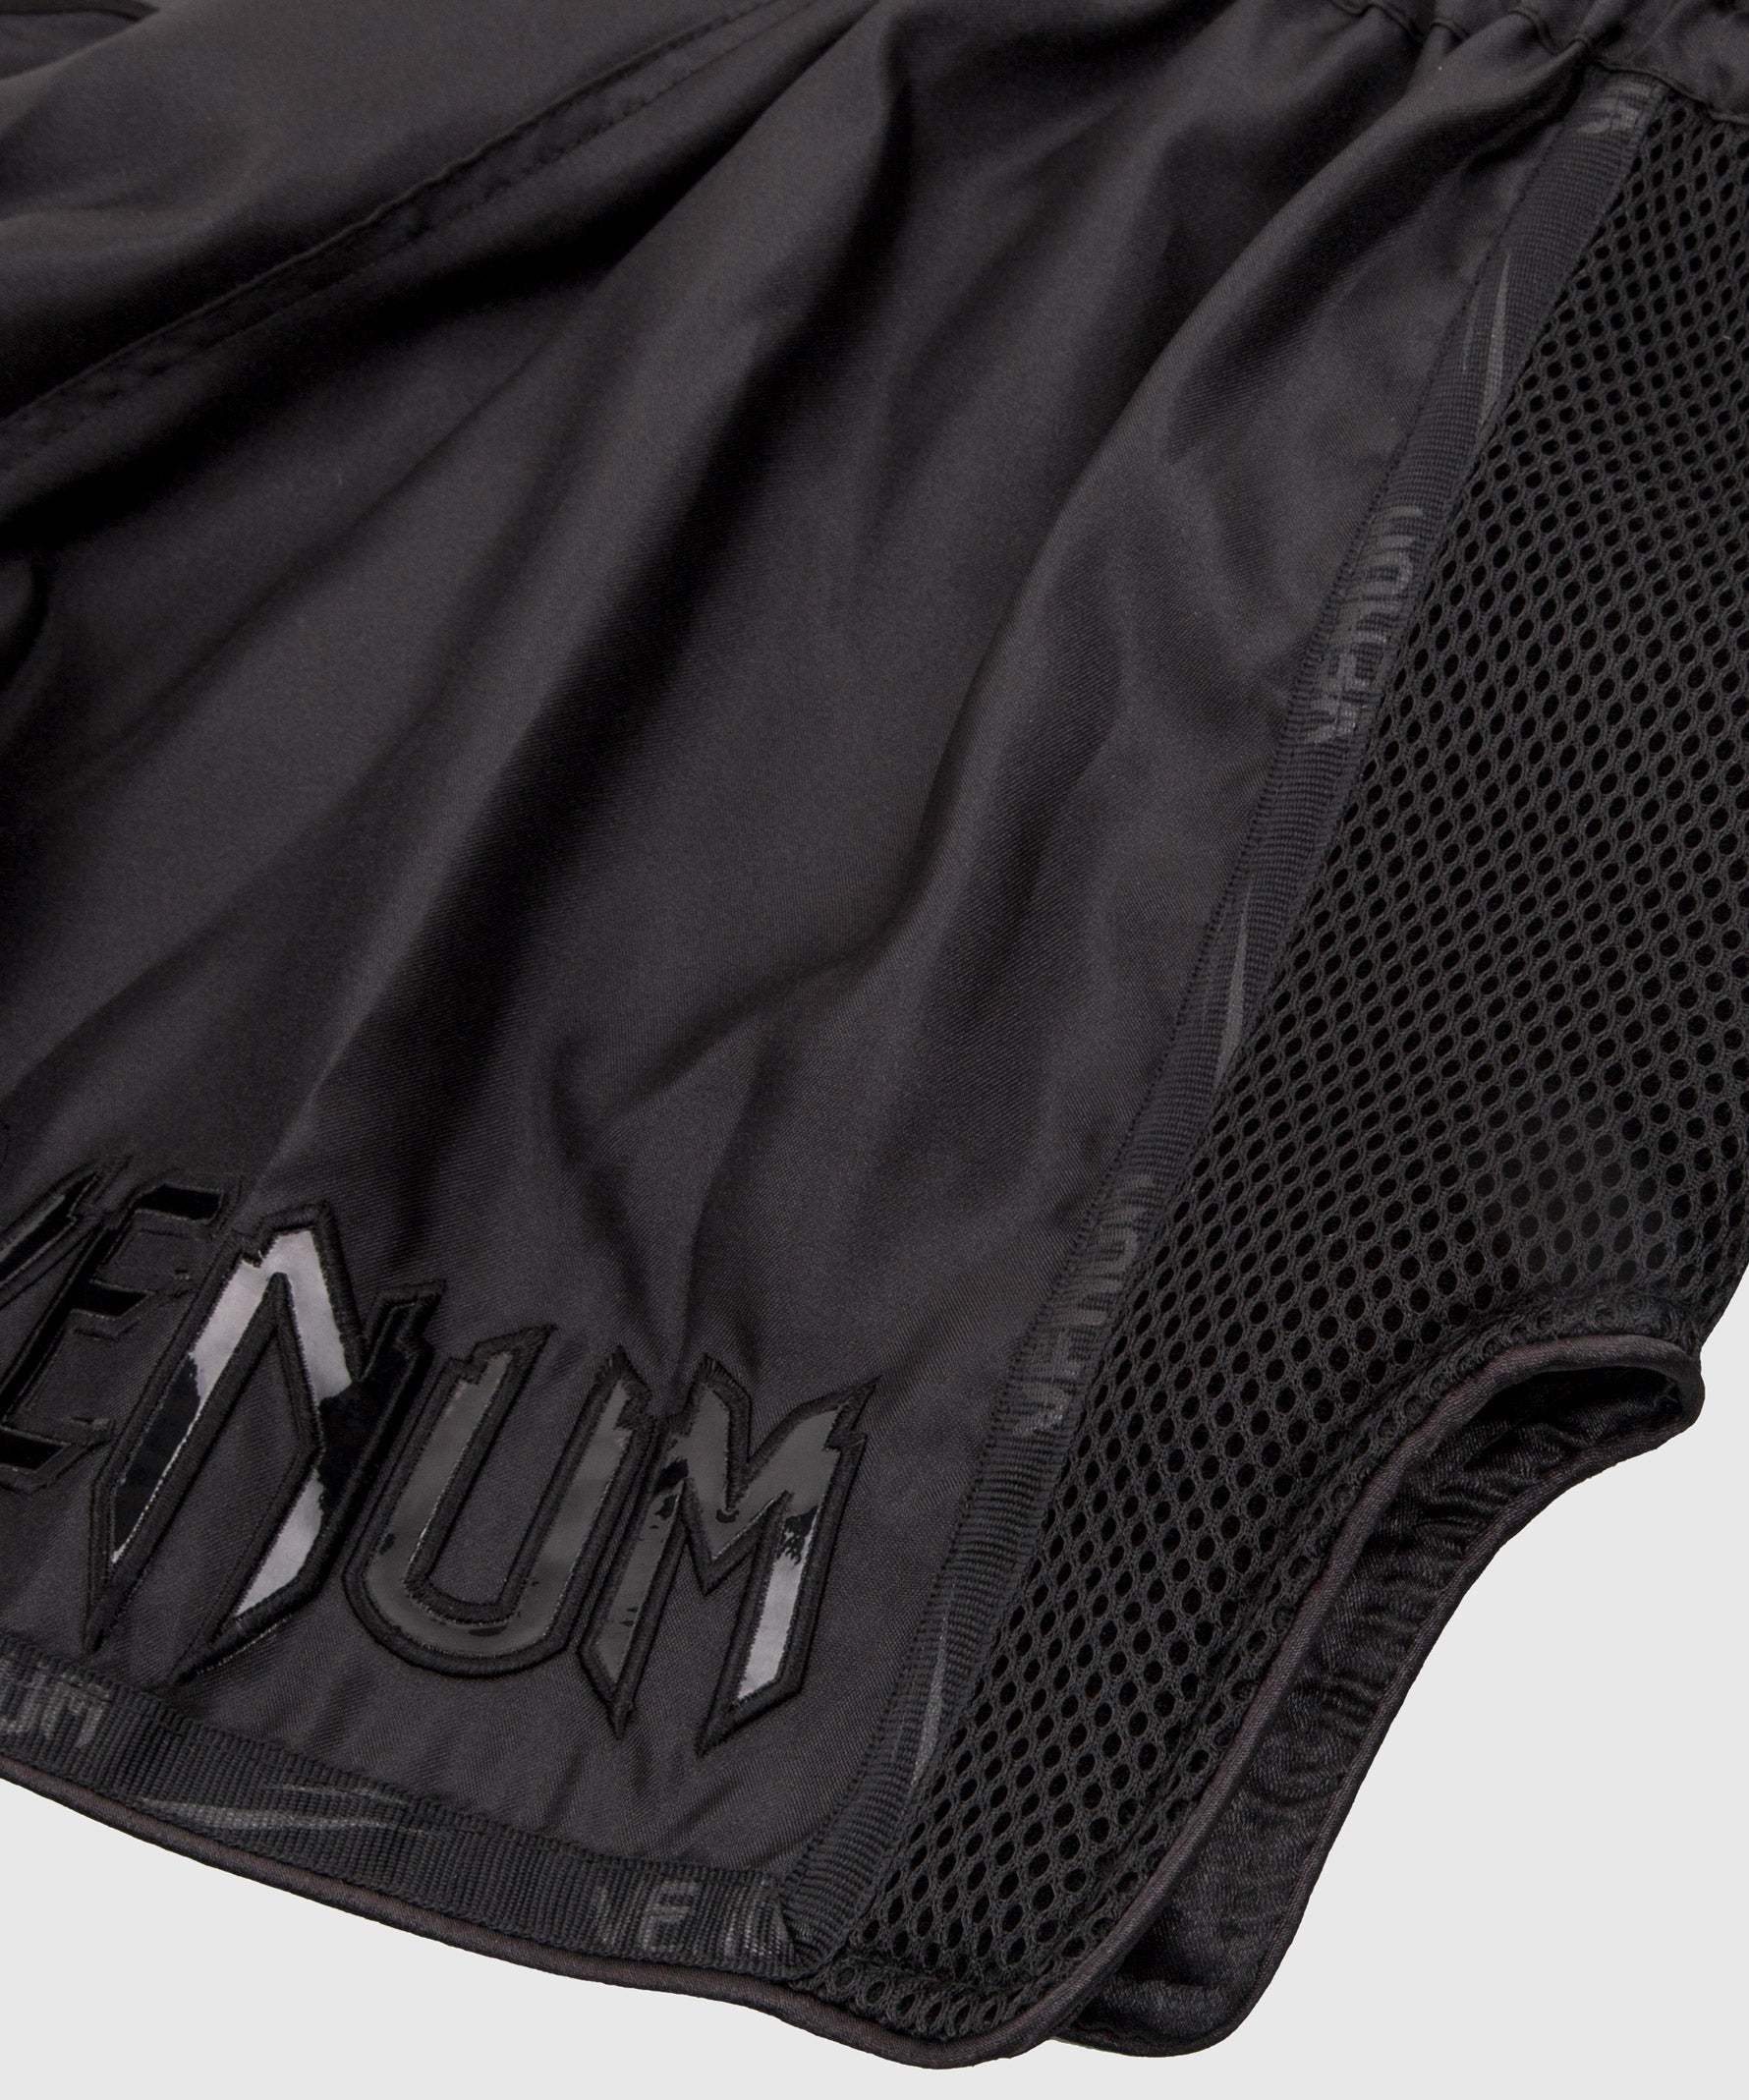 Pantalones de Muay Thai Venum Giant Camo - Negro/Amarillo – Venum España